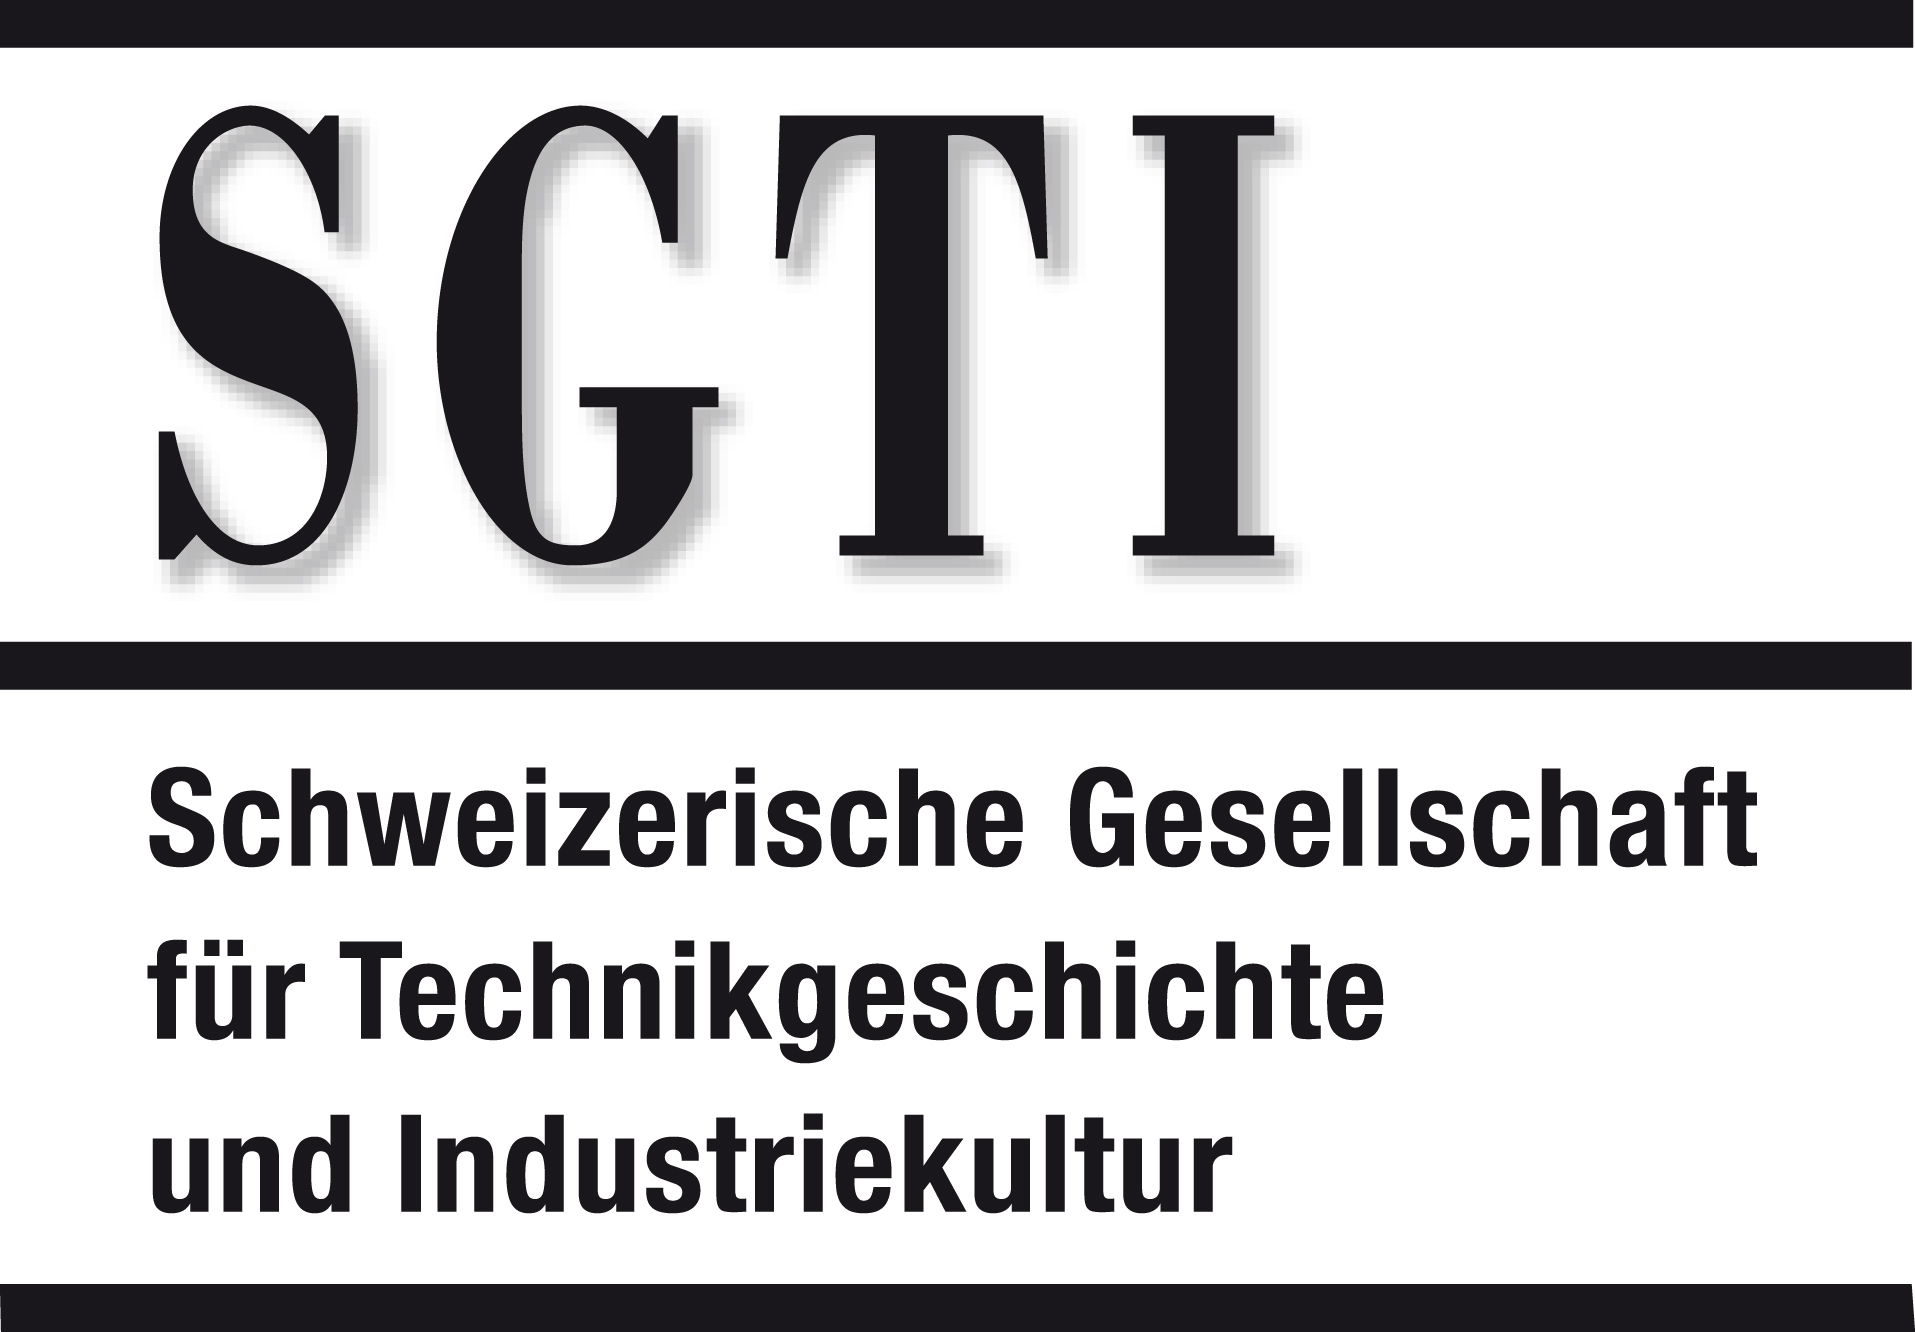 SGTI - Schweizerische Gesellschaft für Technikgeschichte und Industriekultur